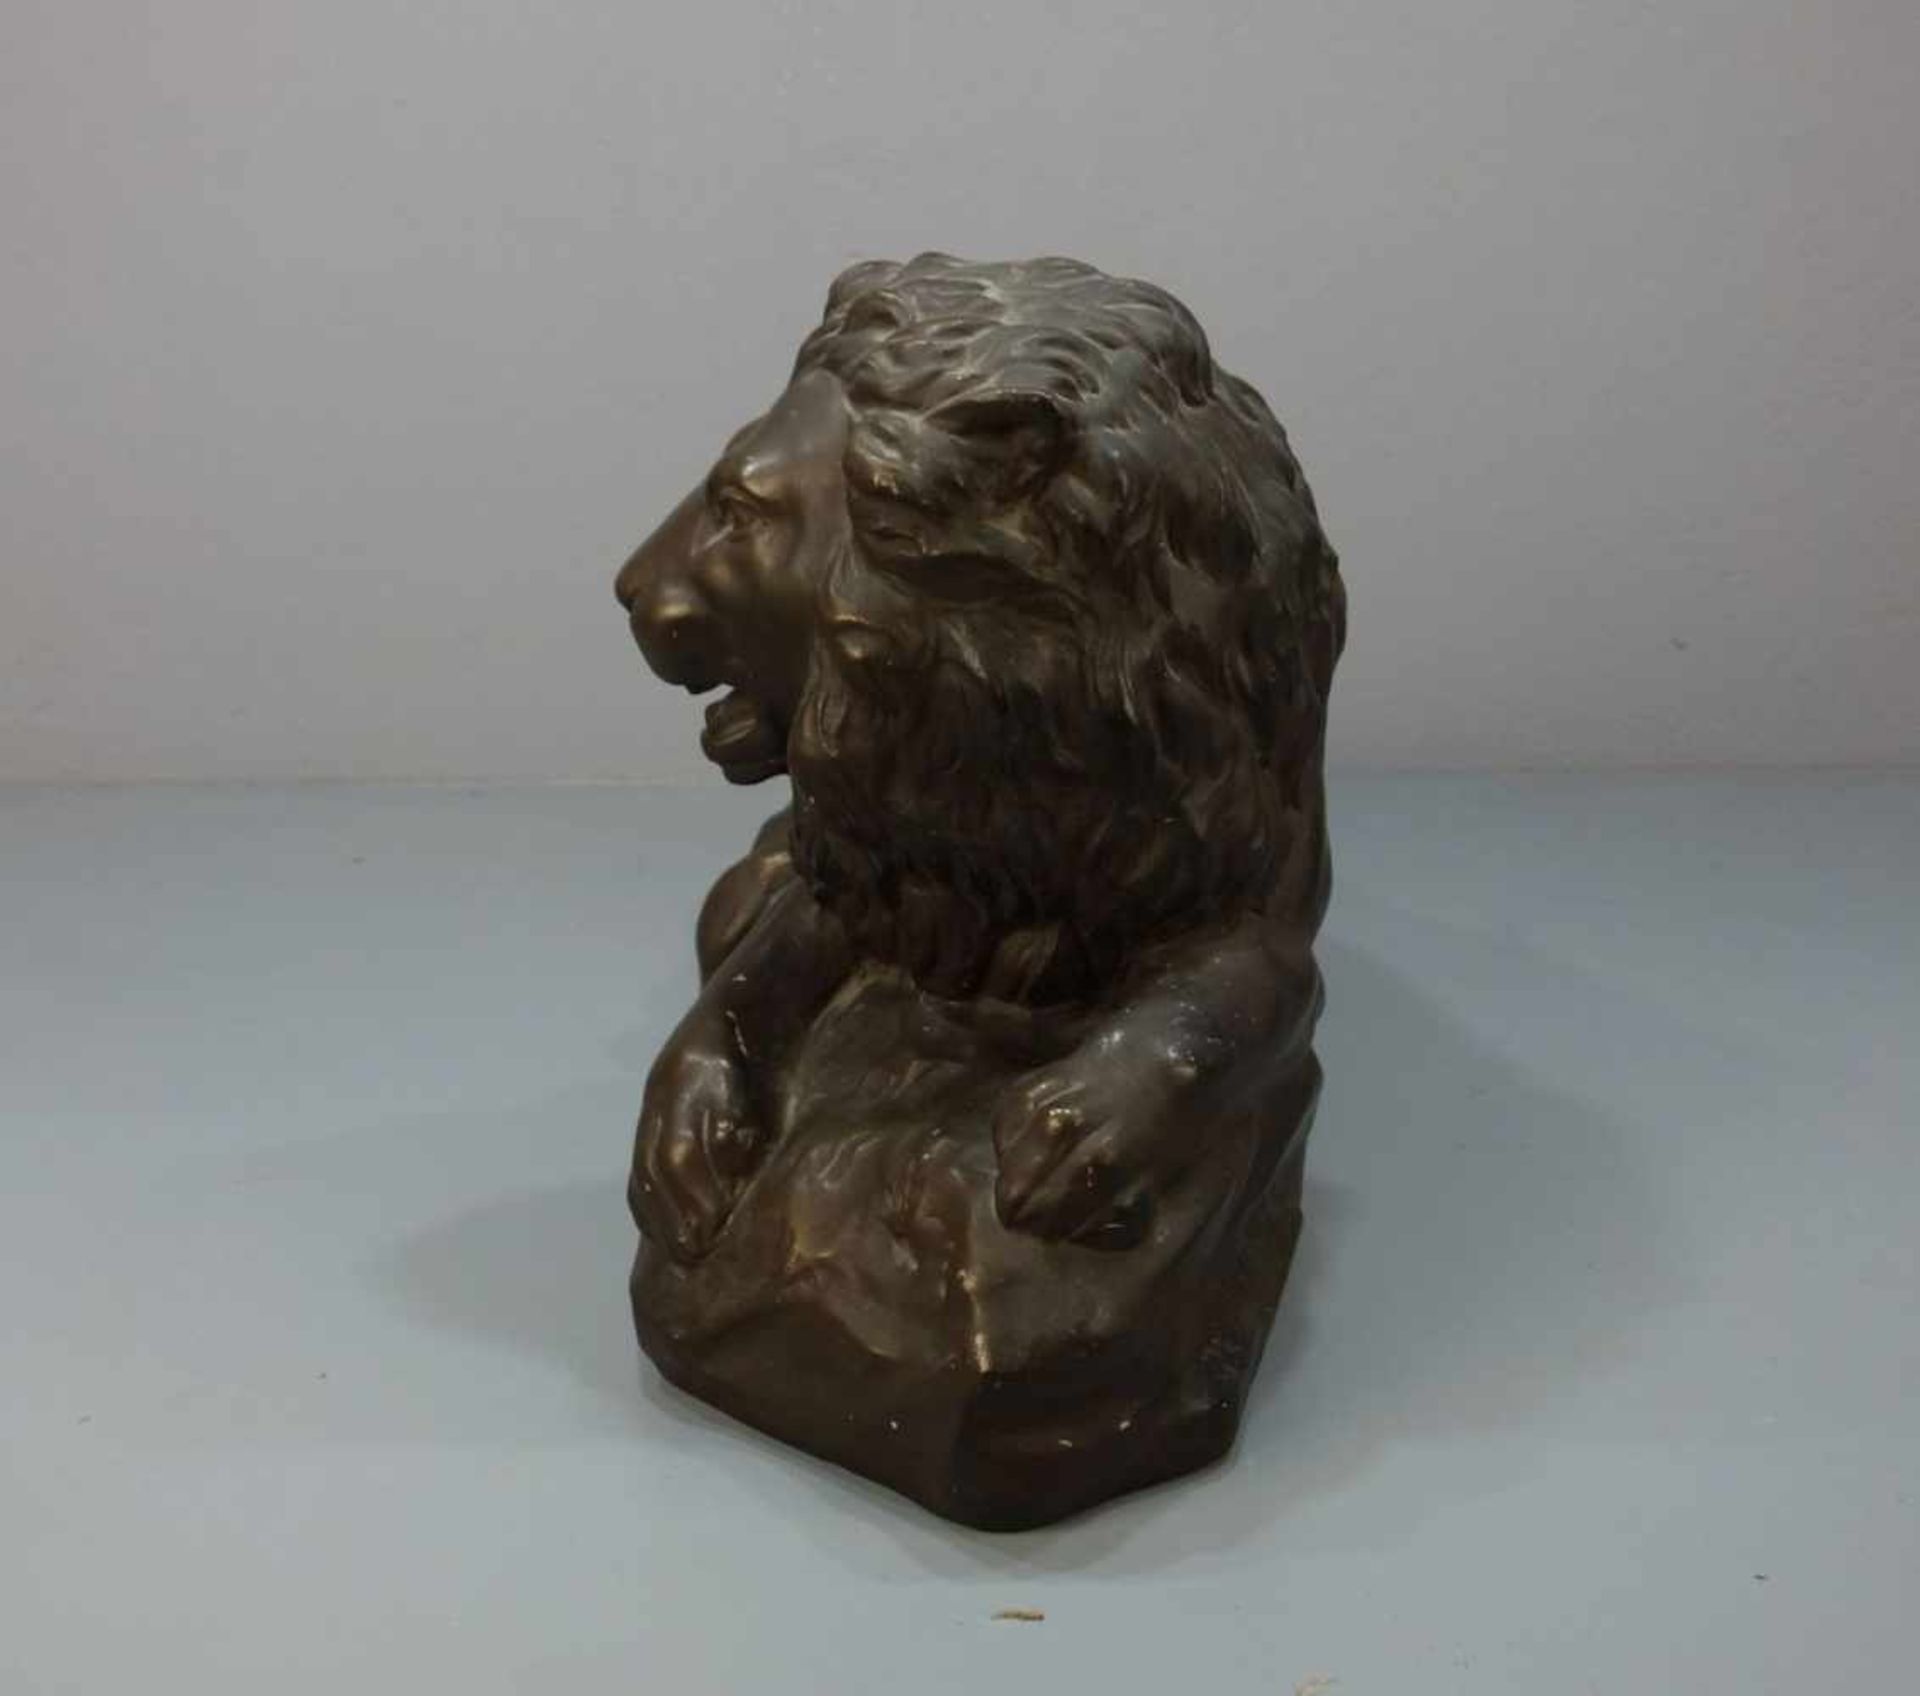 MOECKEL, P. E. (Bildhauer / Animalier des 20. Jh.), Skulptur: "Liegender Löwe", bronzierte Stukko- - Bild 2 aus 5